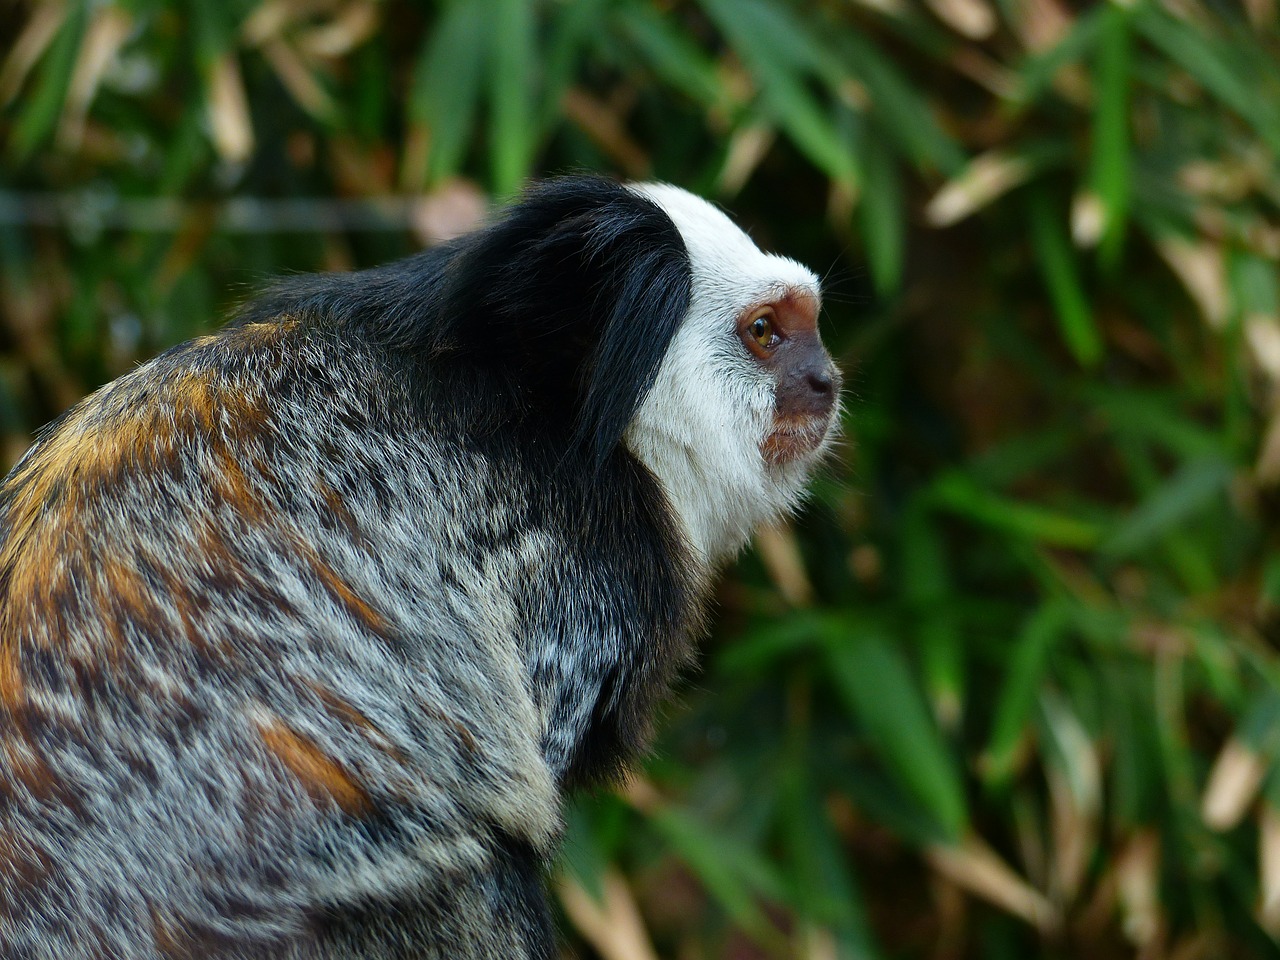 white-headed marmoset monkey äffchen free photo